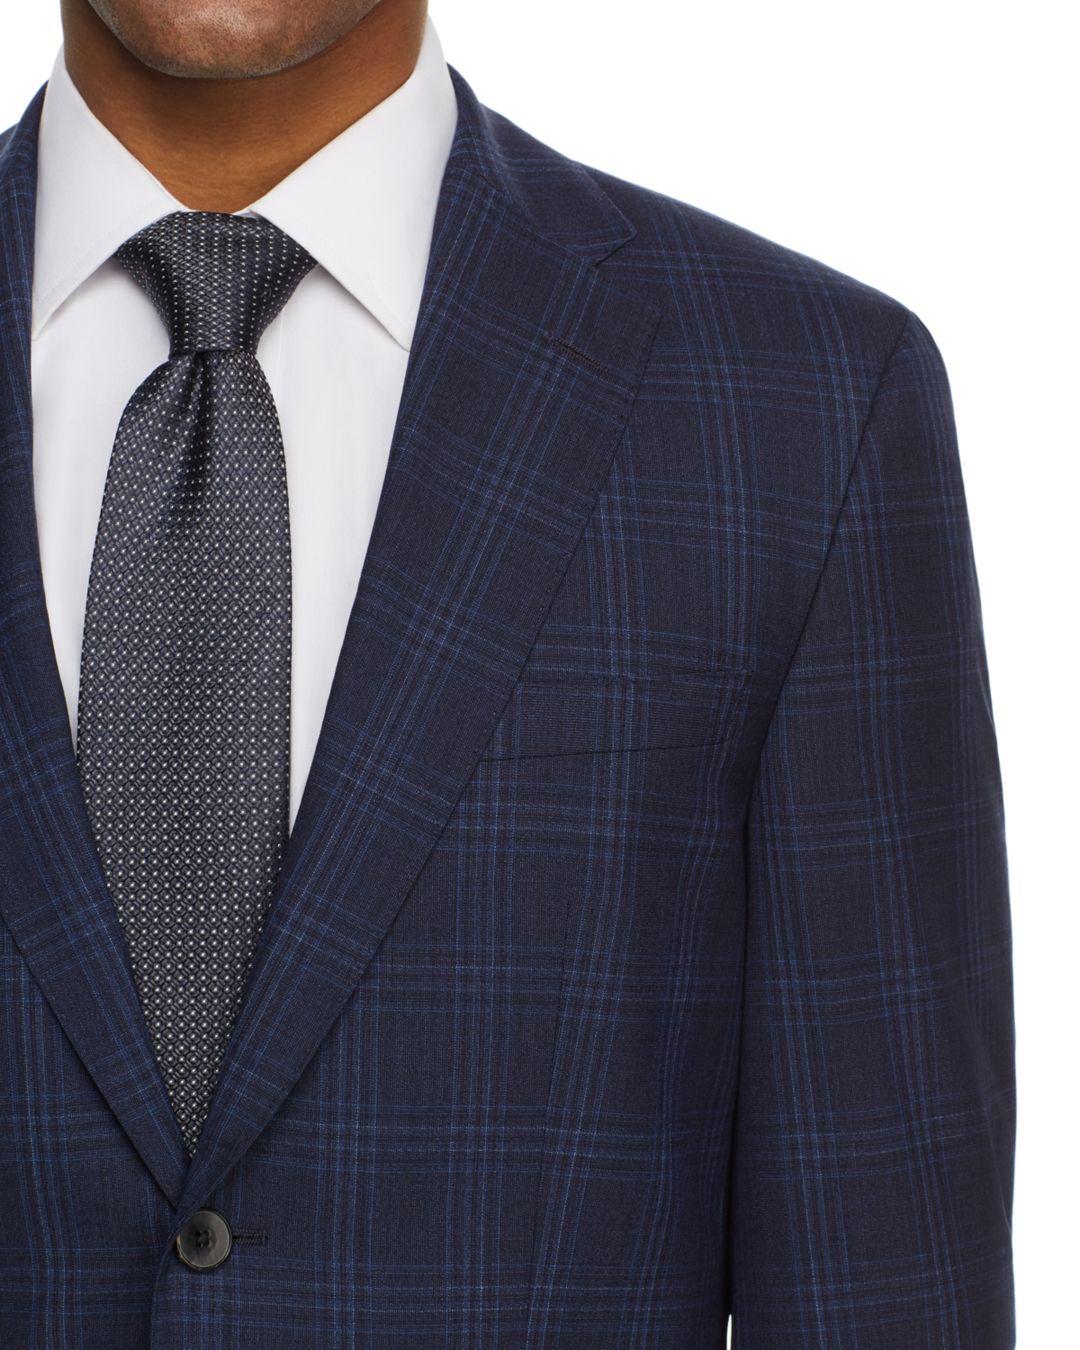 BOSS by HUGO BOSS Jeckson/lenon Tonal Plaid Regular Fit Suit in Navy/Blue  (Blue) for Men | Lyst